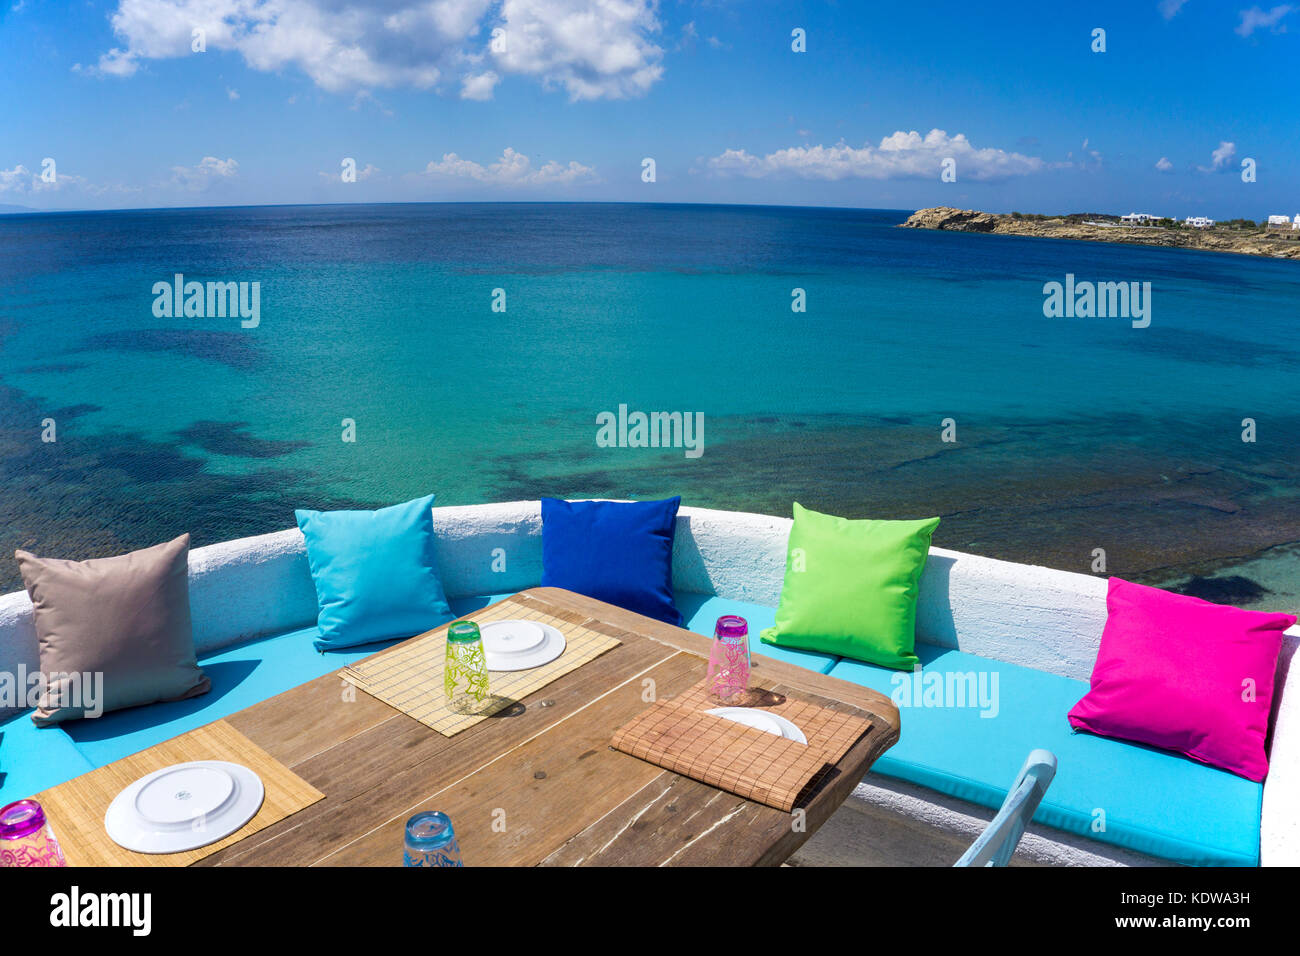 Anna's Place, elegante bar sulla spiaggia di paradise beach, Mykonos, Cicladi, Egeo, Grecia, Europa Foto Stock